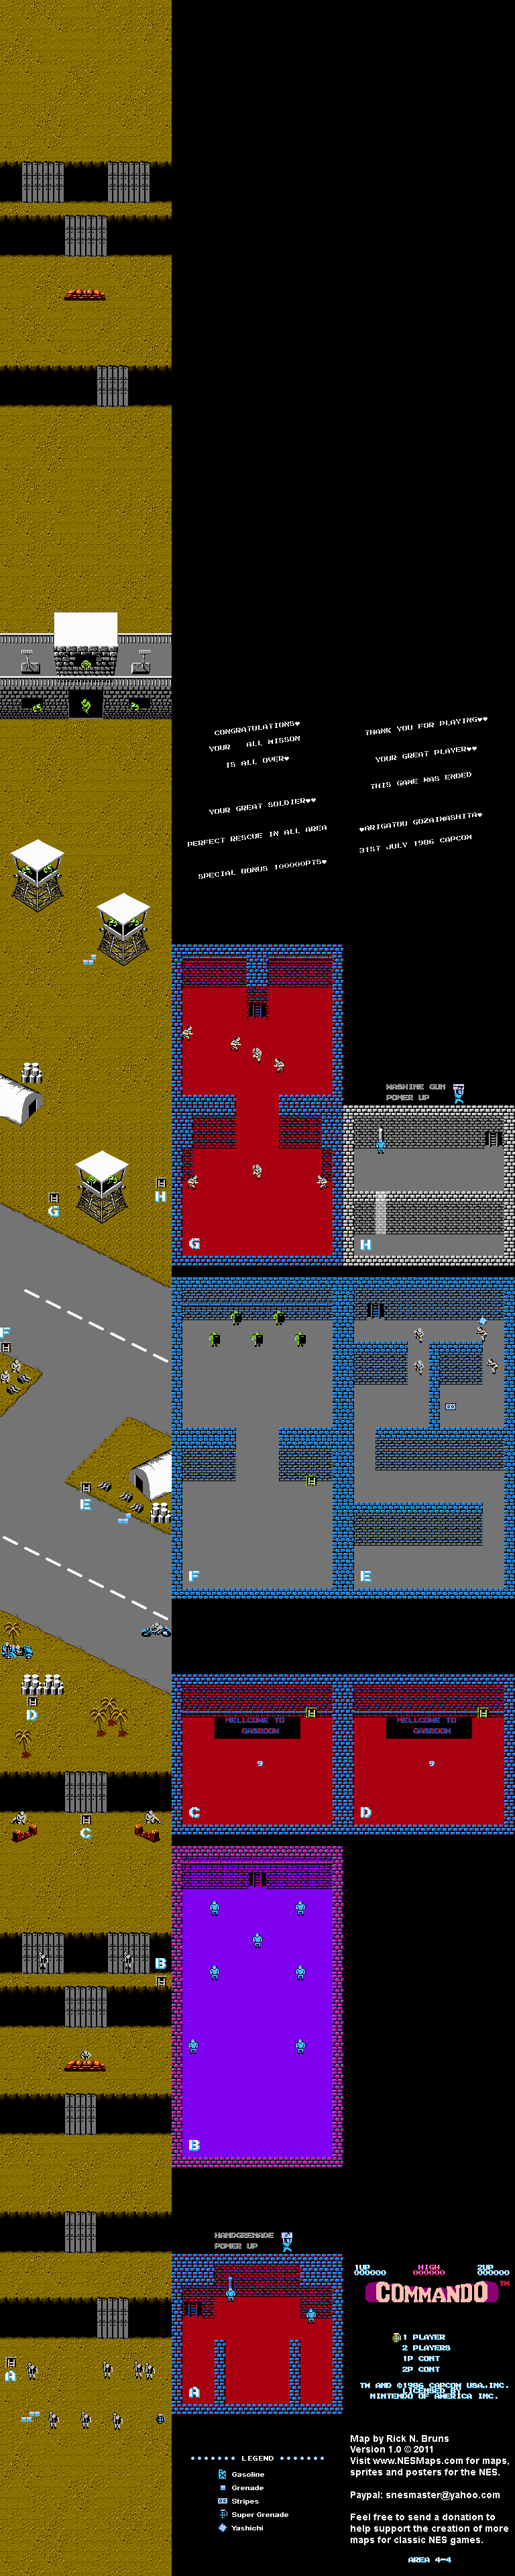 Commando - Area 4-4 - Nintendo NES Map